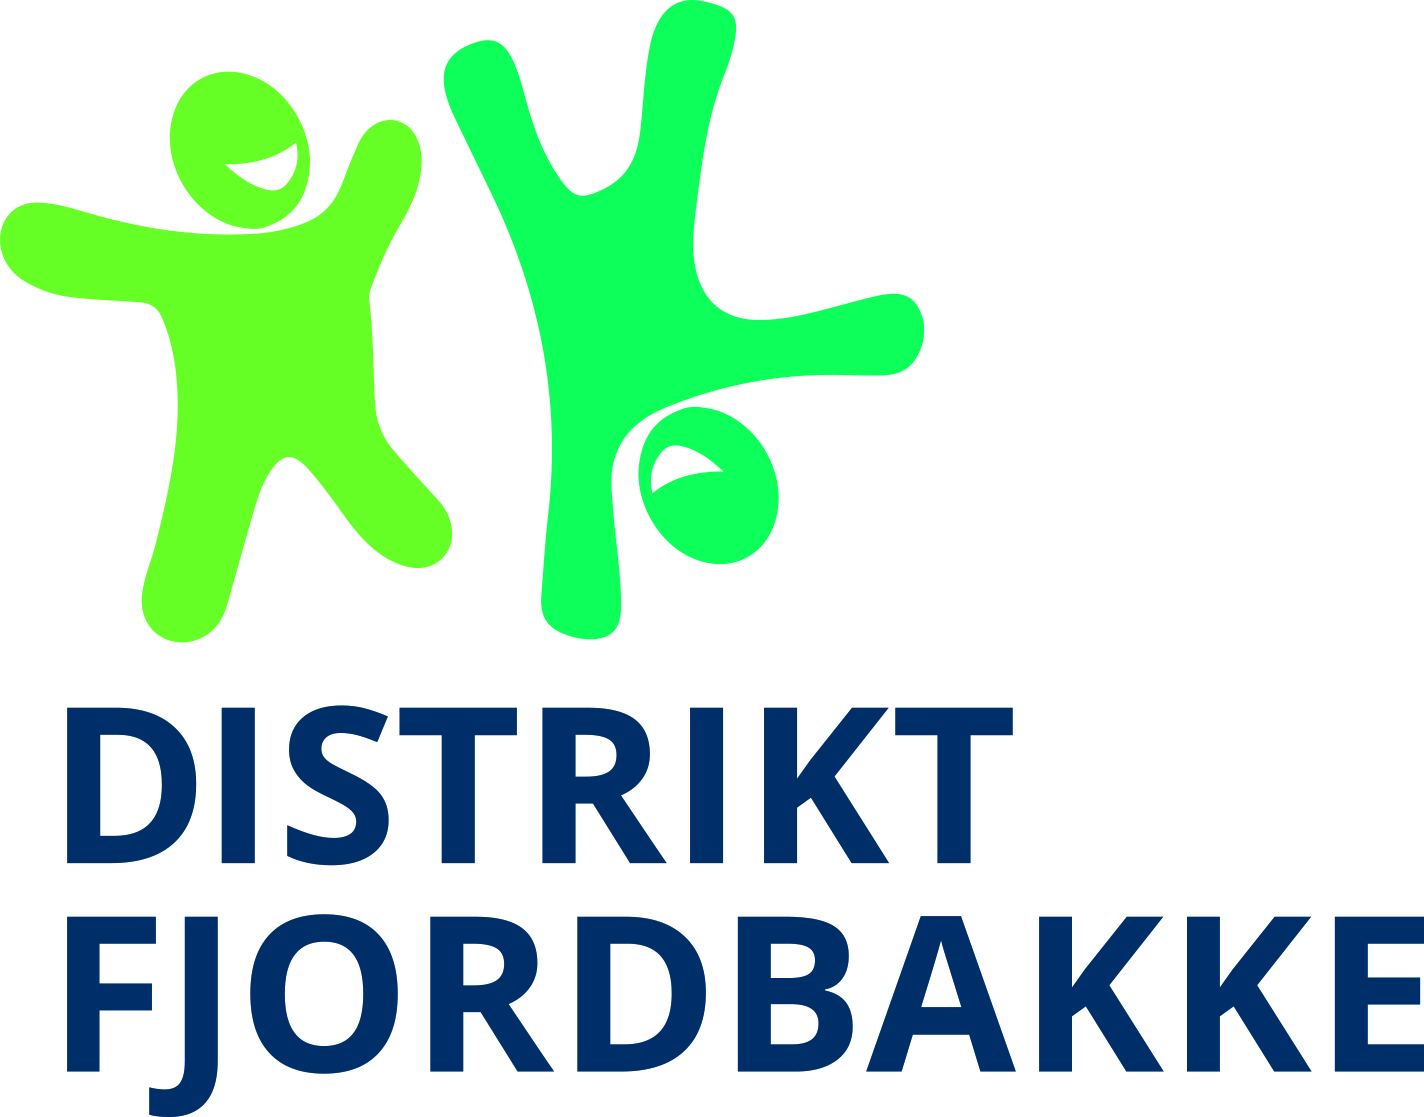 Distrikt Fjordbakke